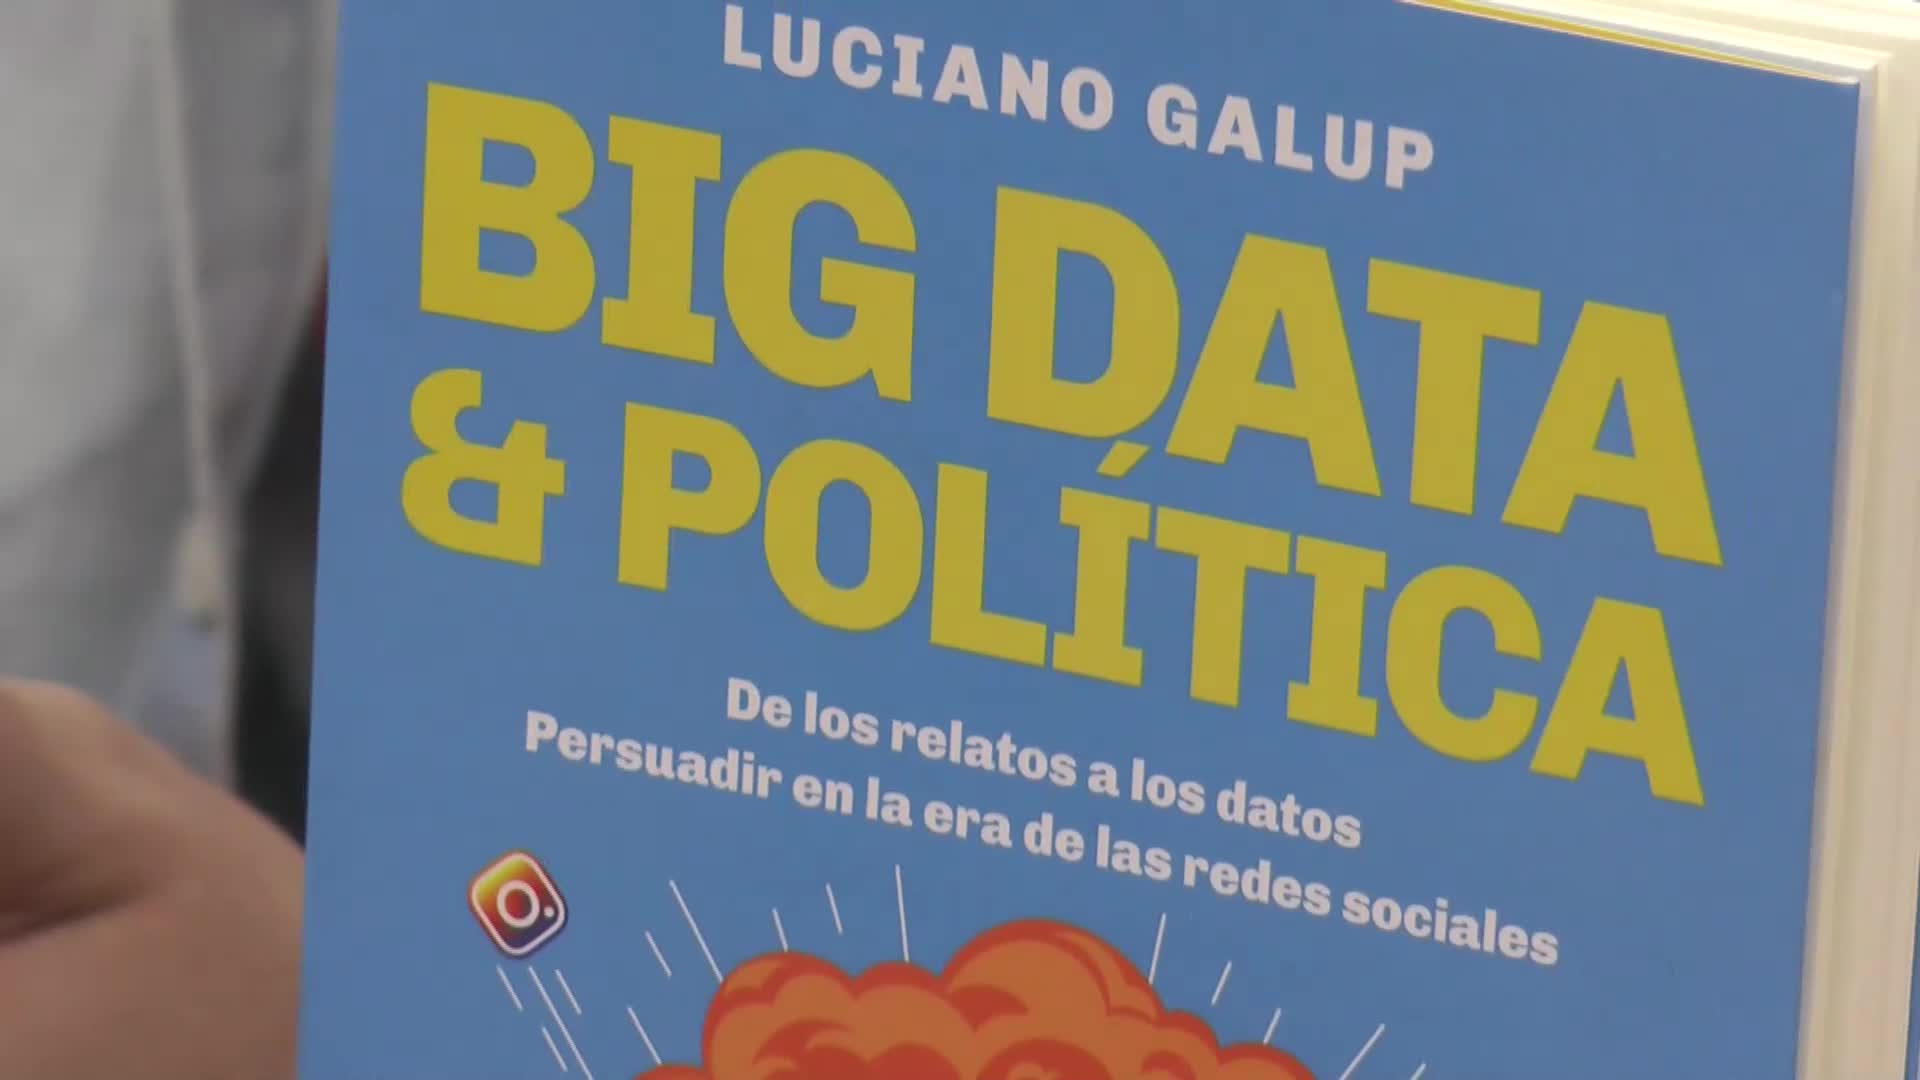 "Big data & política" es el título del libro presentado por Luciano Galup